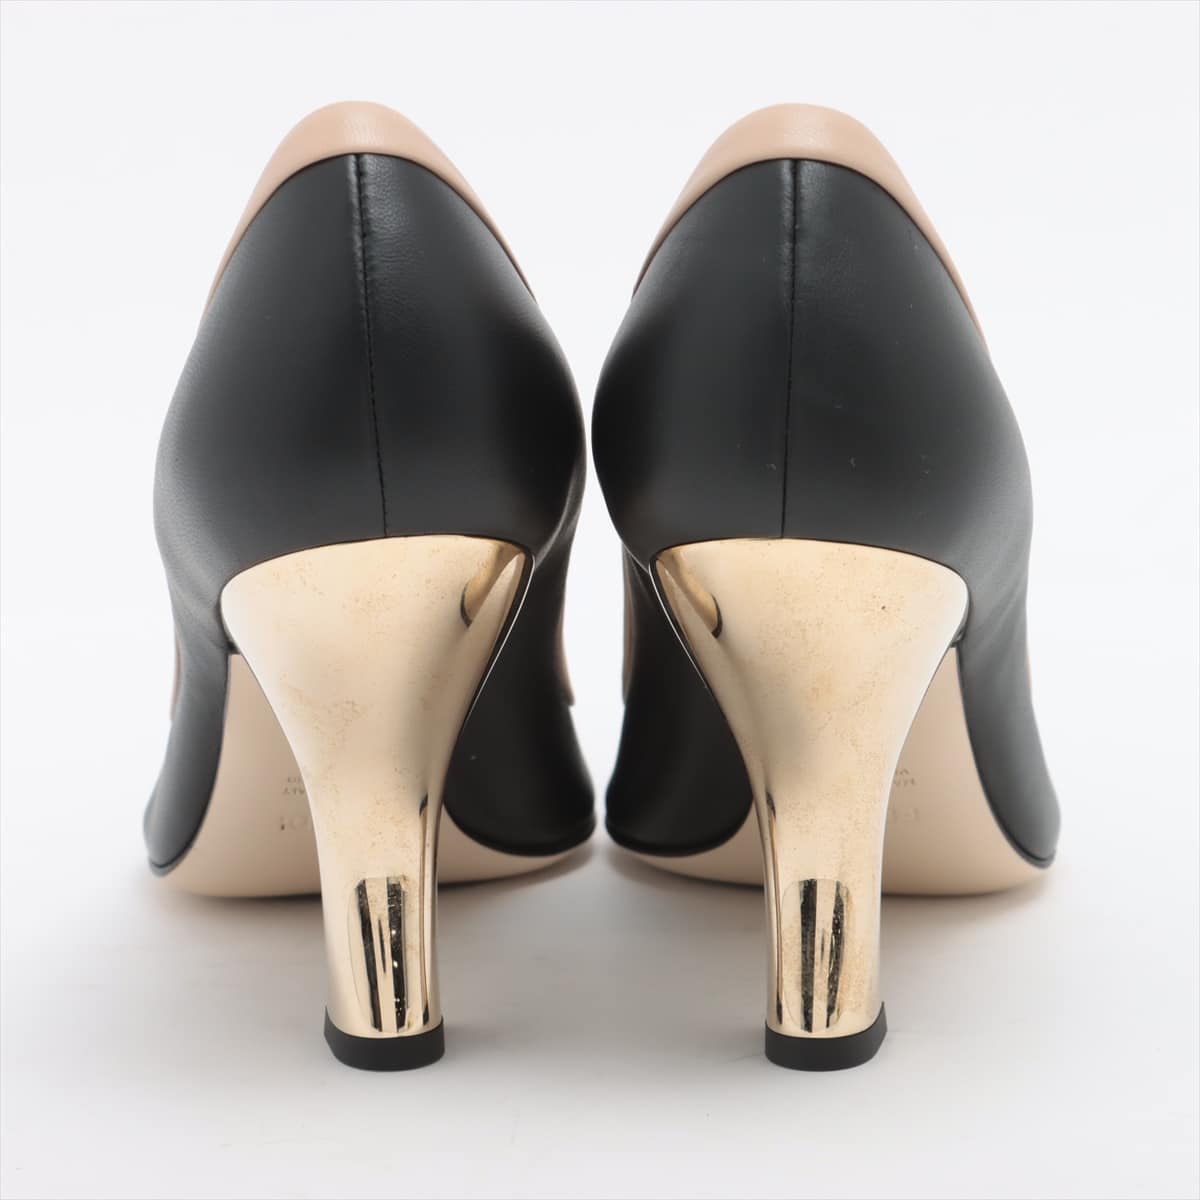 Fendi Leather Pumps 40 Ladies' black x beige metal heel